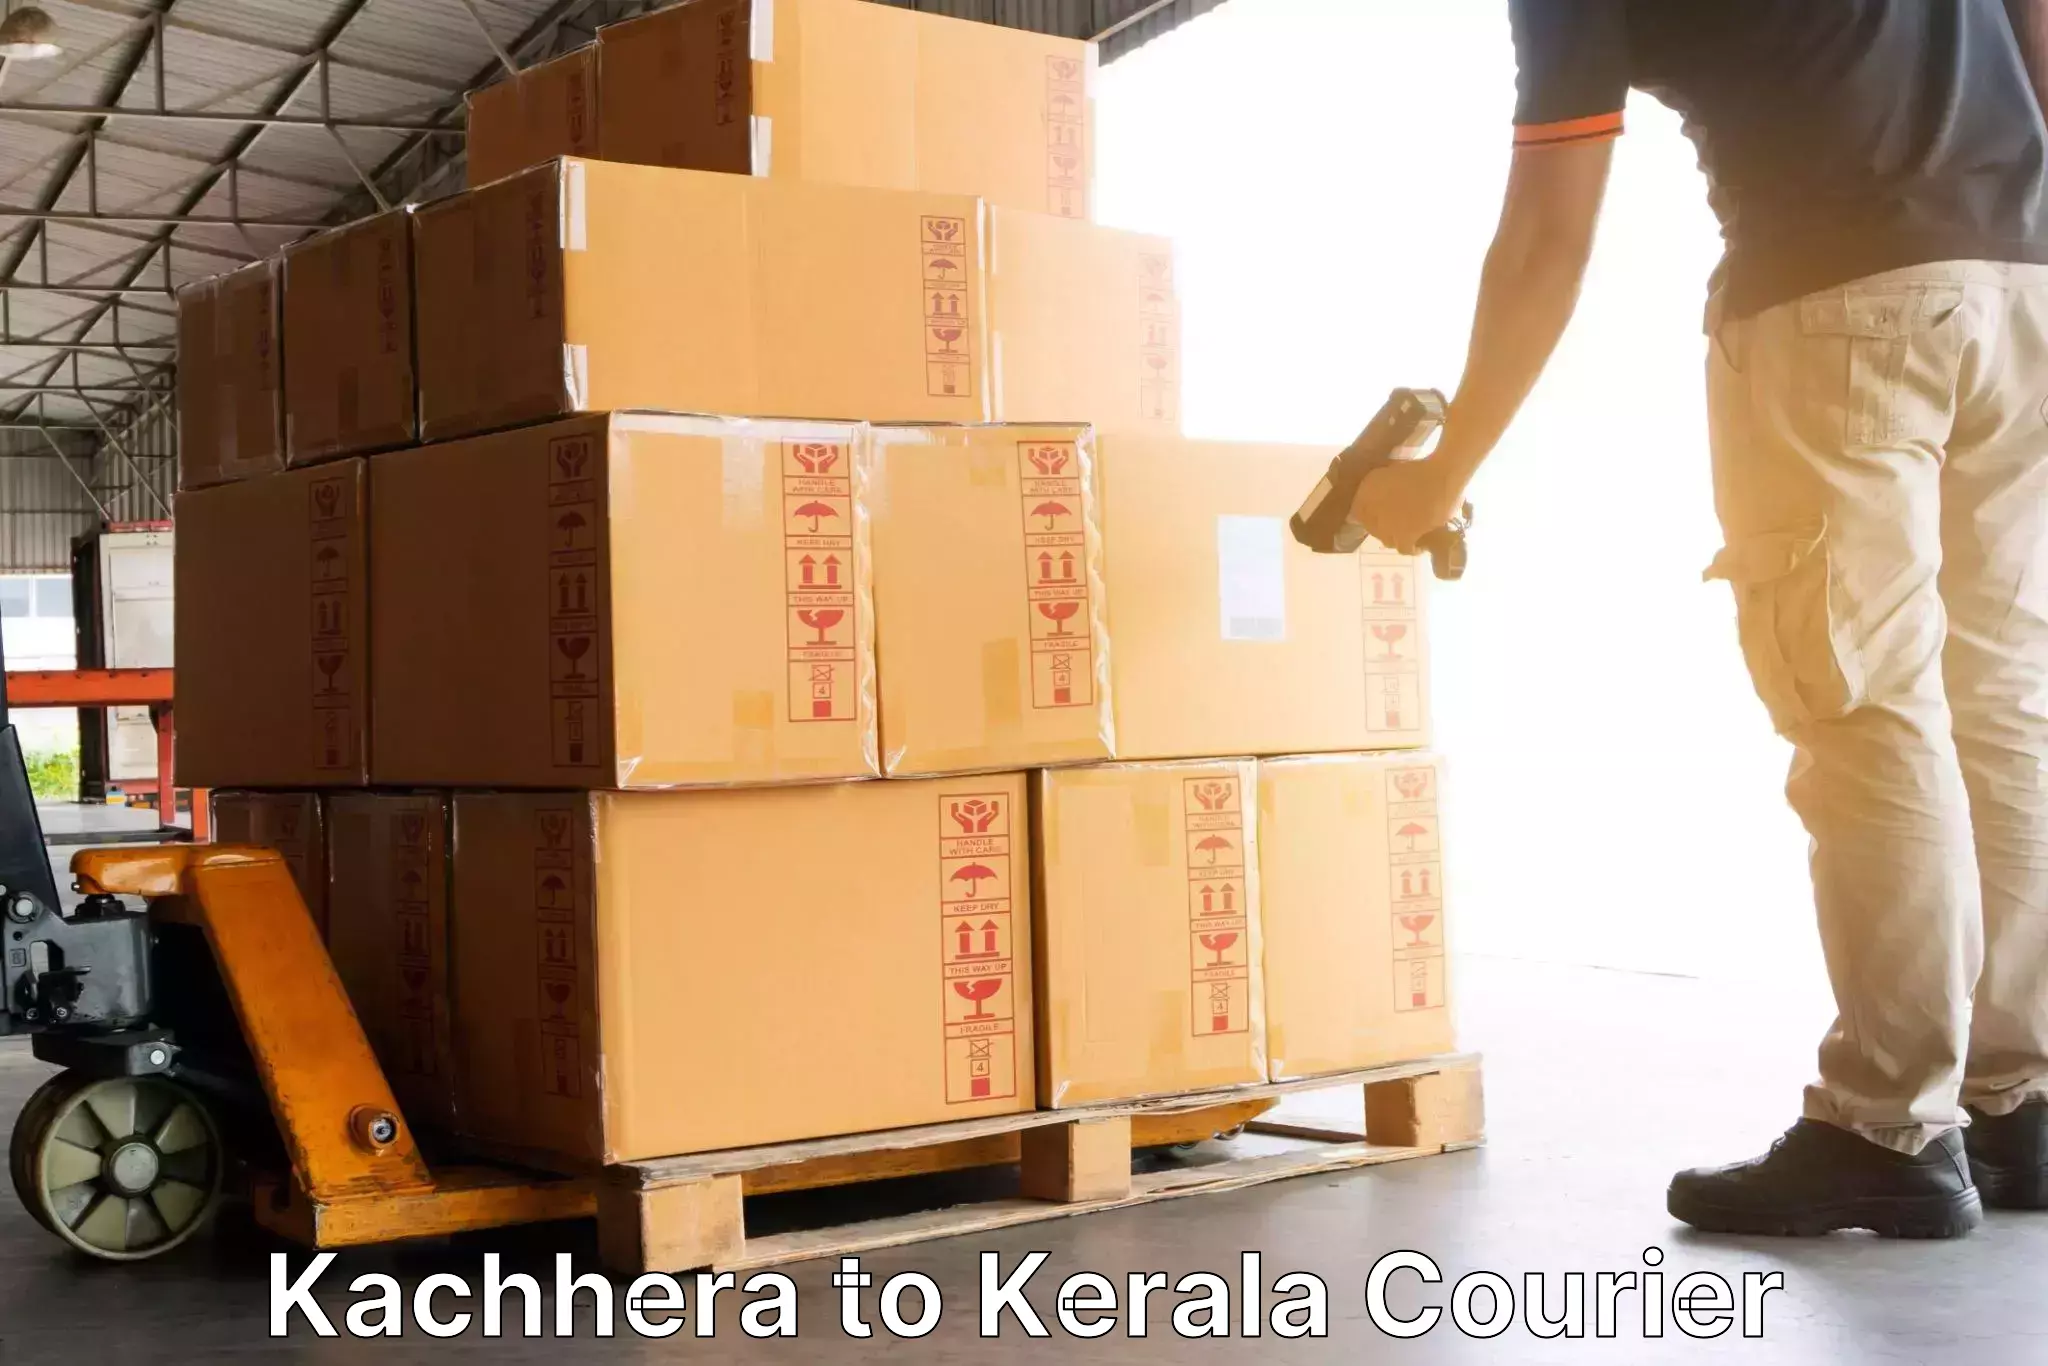 Speedy delivery service in Kachhera to Kerala